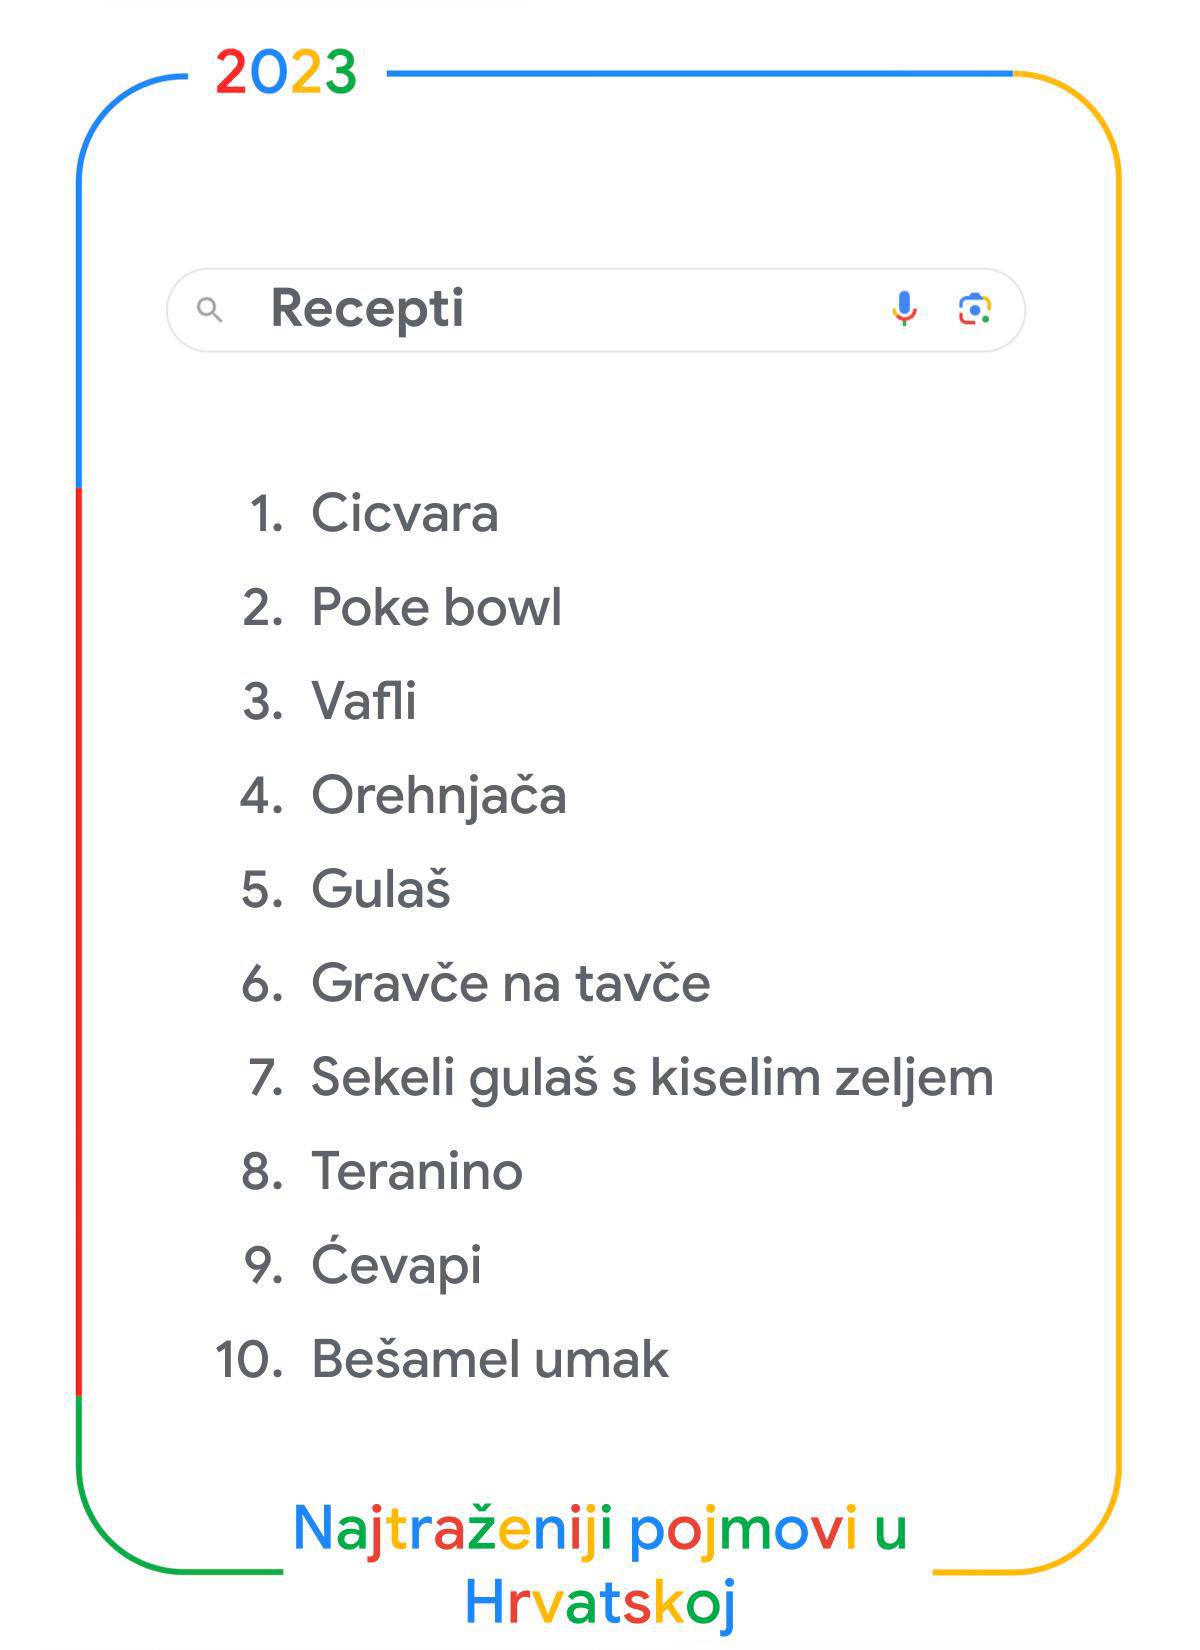 FOTO Google je objavio što su Hrvati najviše pretraživali: Na vrhu su nogomet i Prijovićka